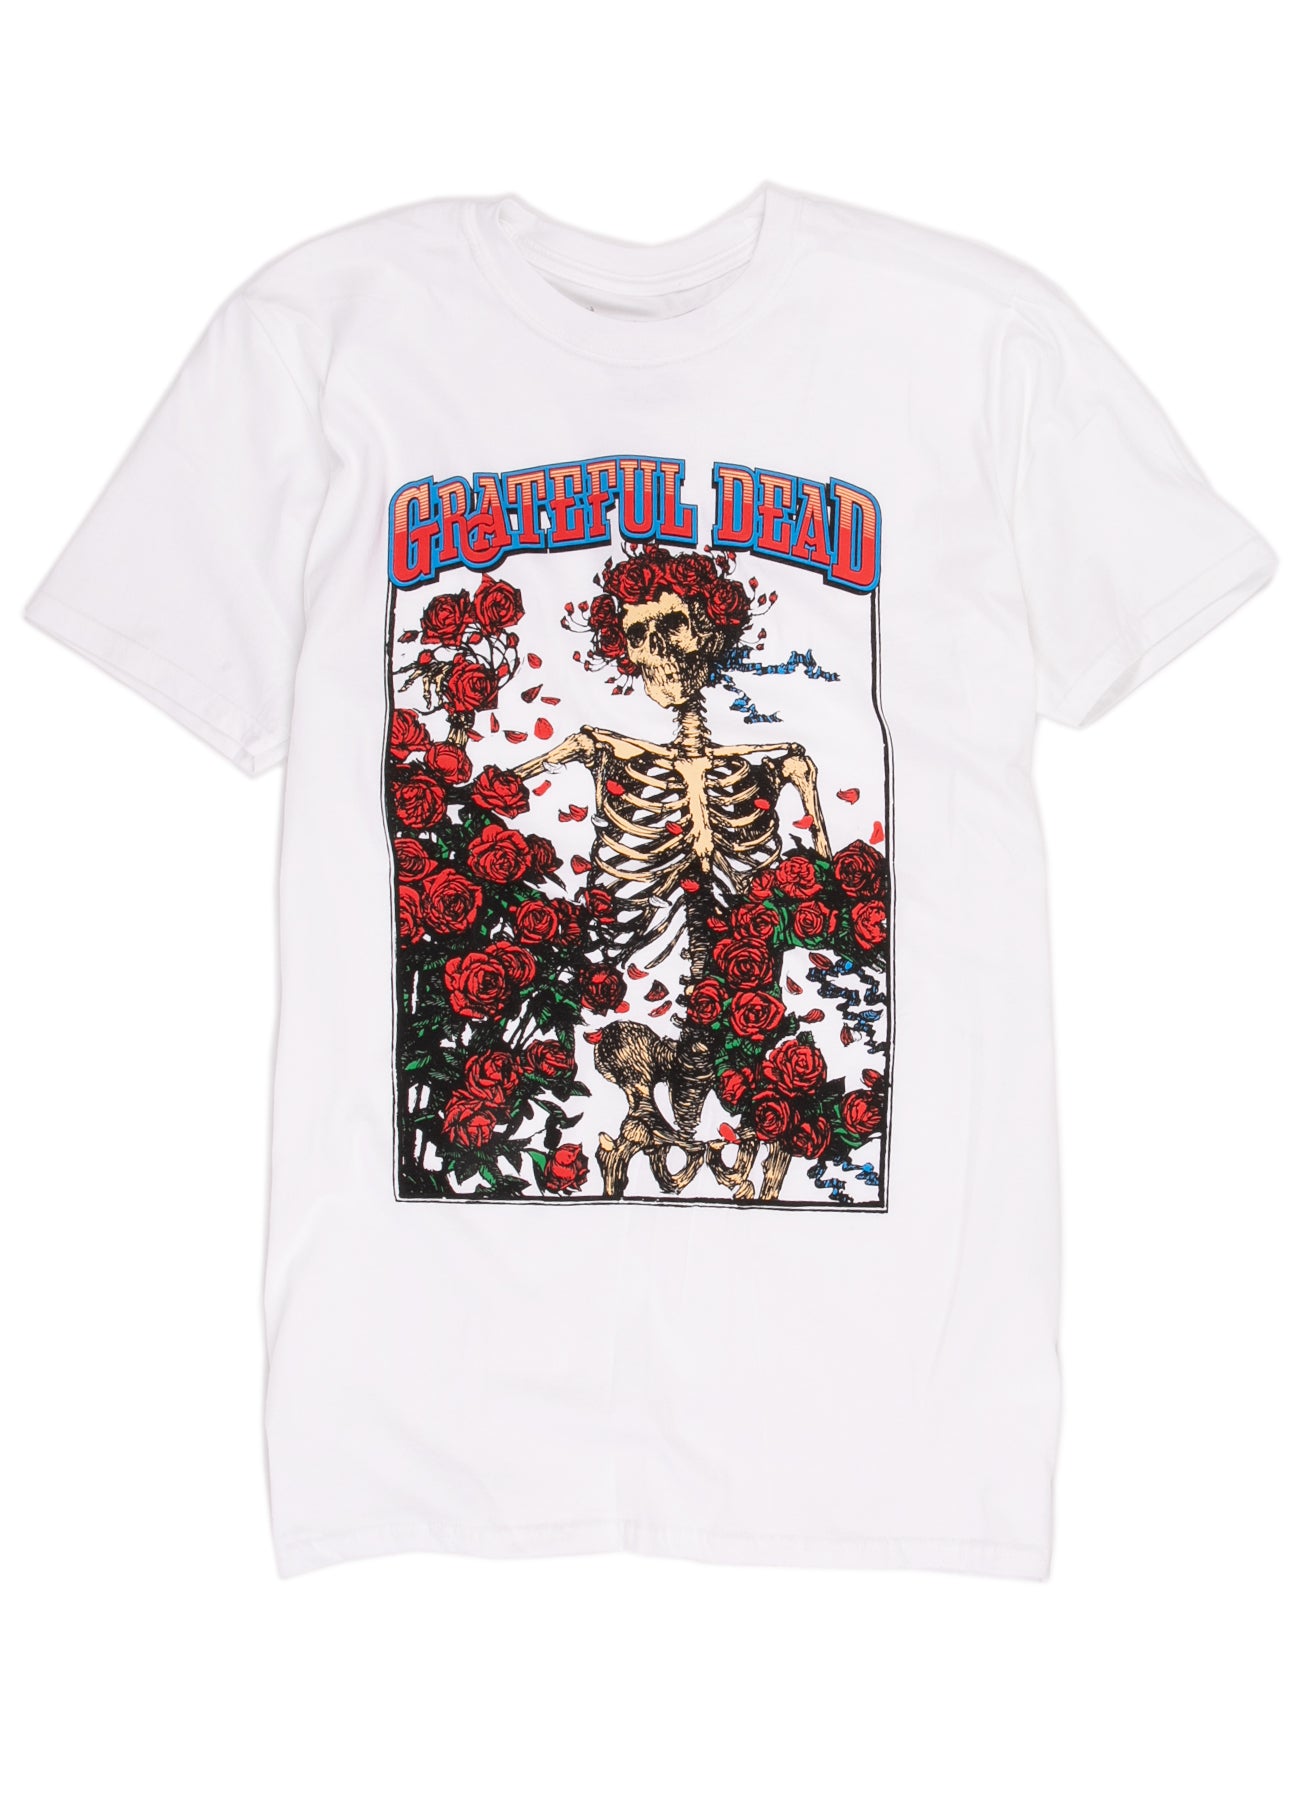 grateful dead shirt skeleton